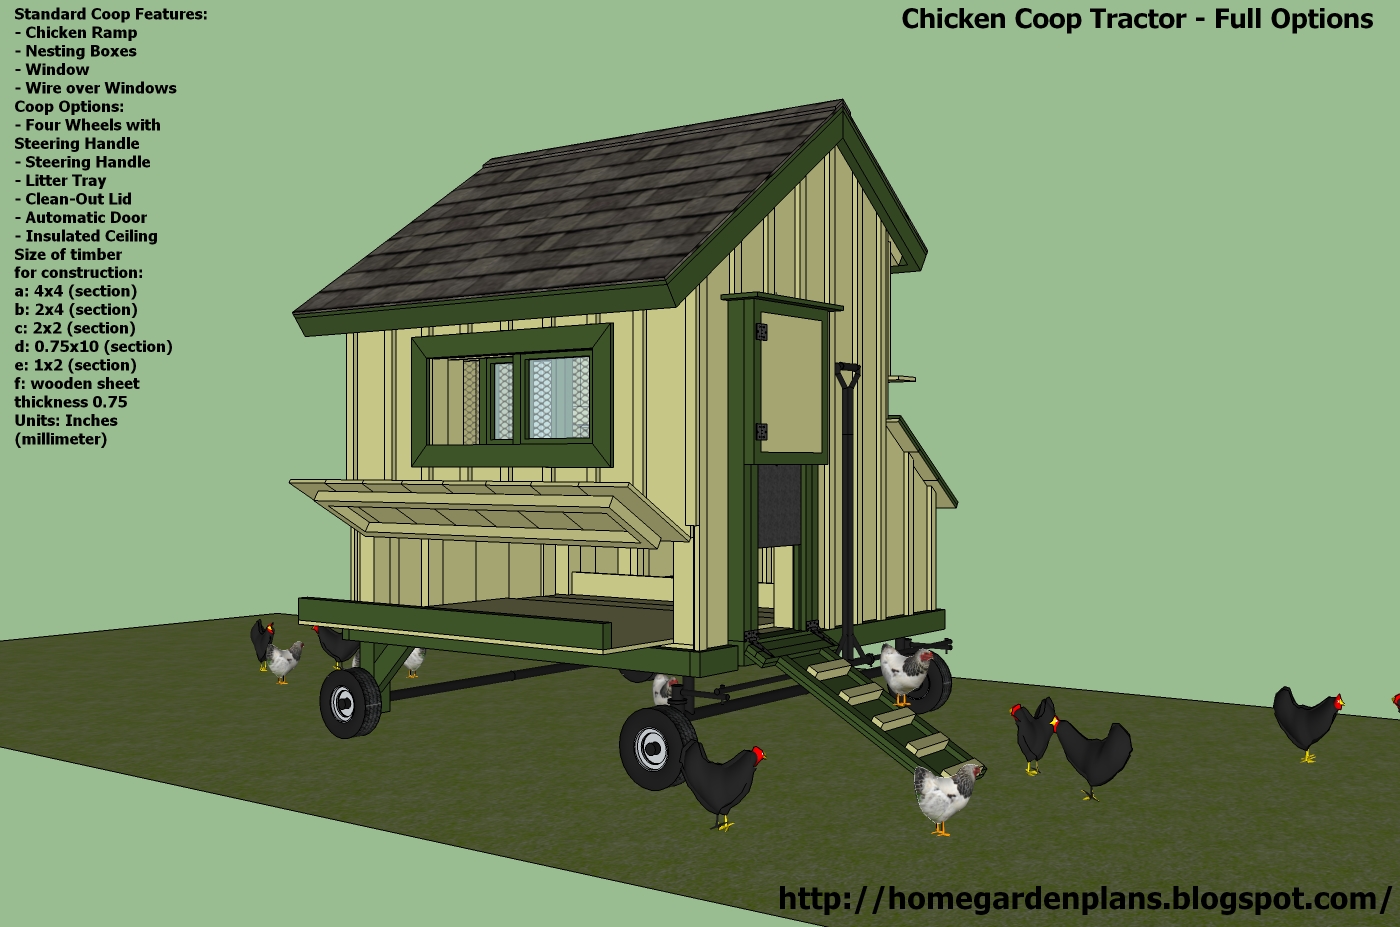 Chicken Co-op Tractor